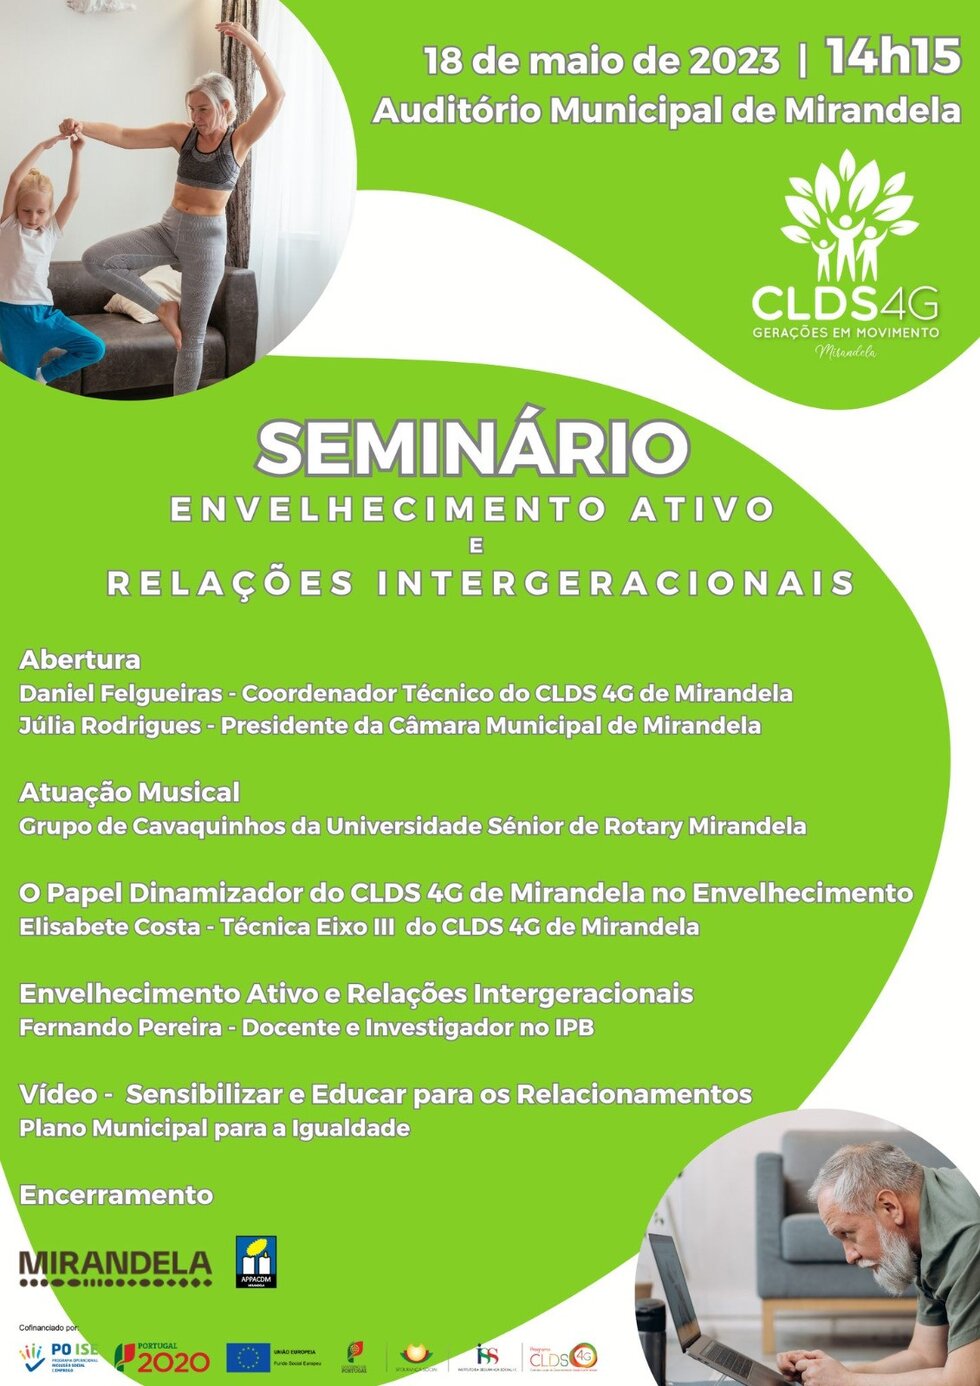 seminario_envelhecimento_ativo_e_relacoes_intergeracionais___clds4g